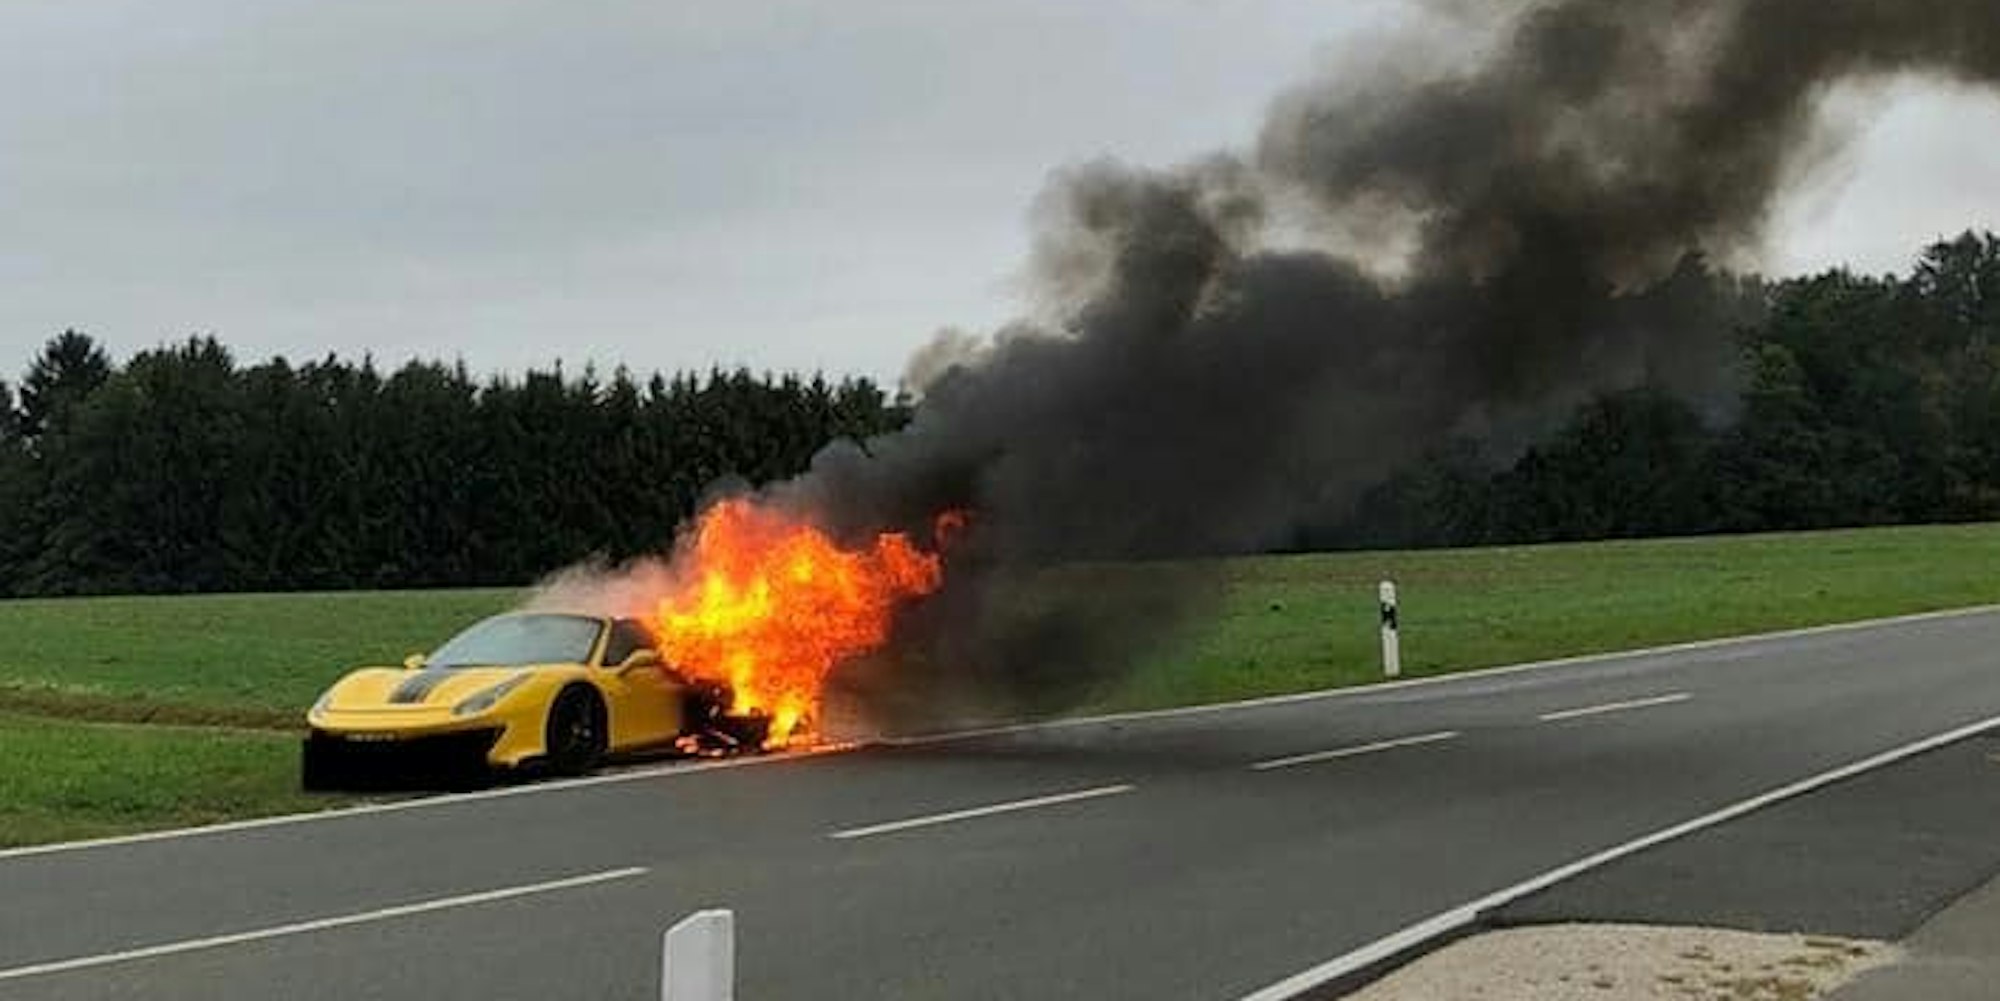 Ferrari geht auf der Autobahn während der Fahrt in Flammen auf